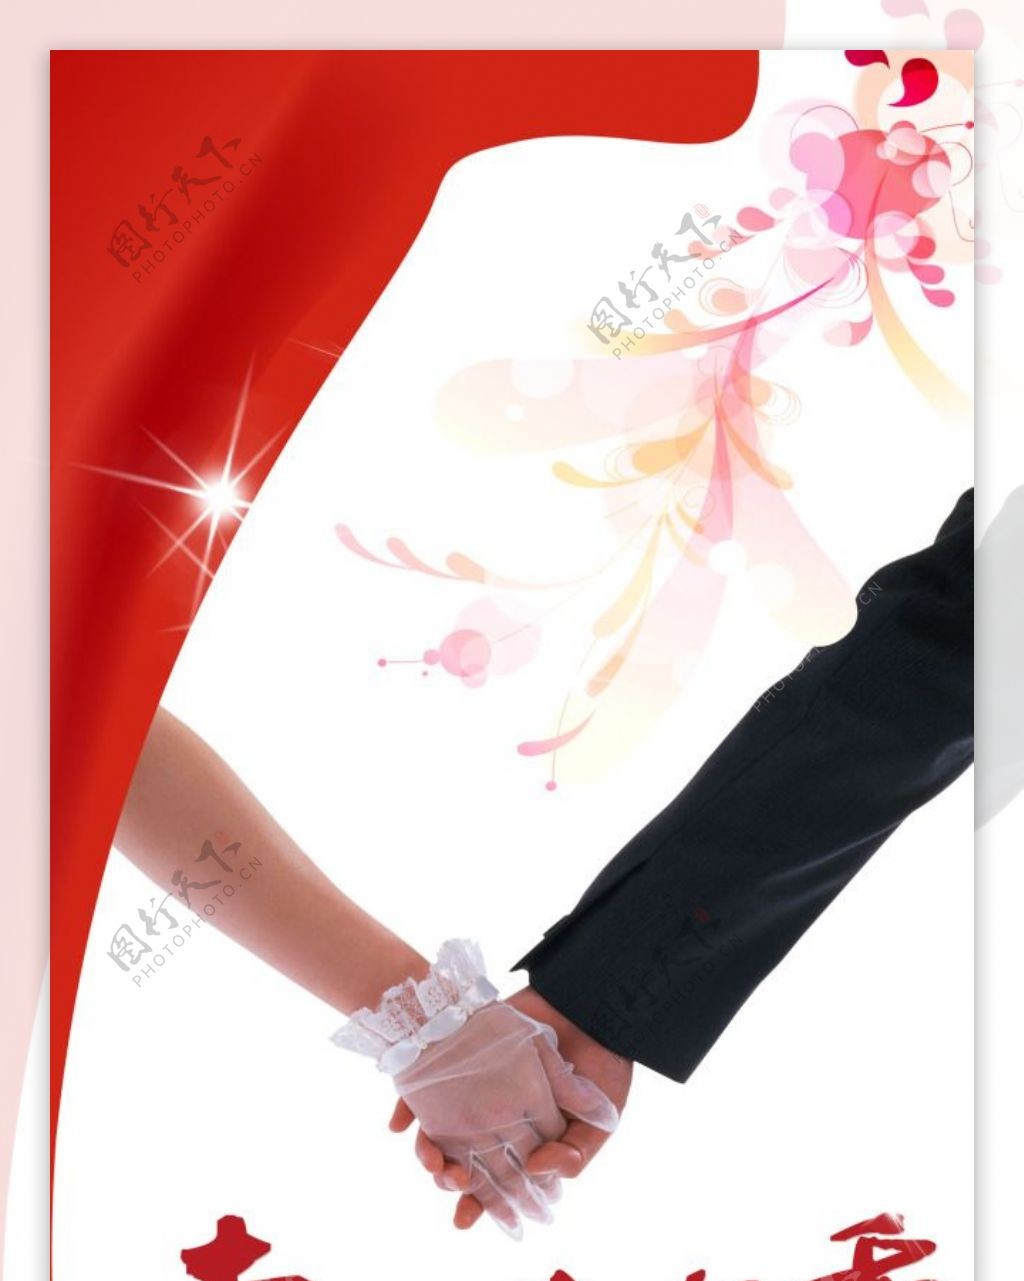 浪漫结婚季X展架海报设计